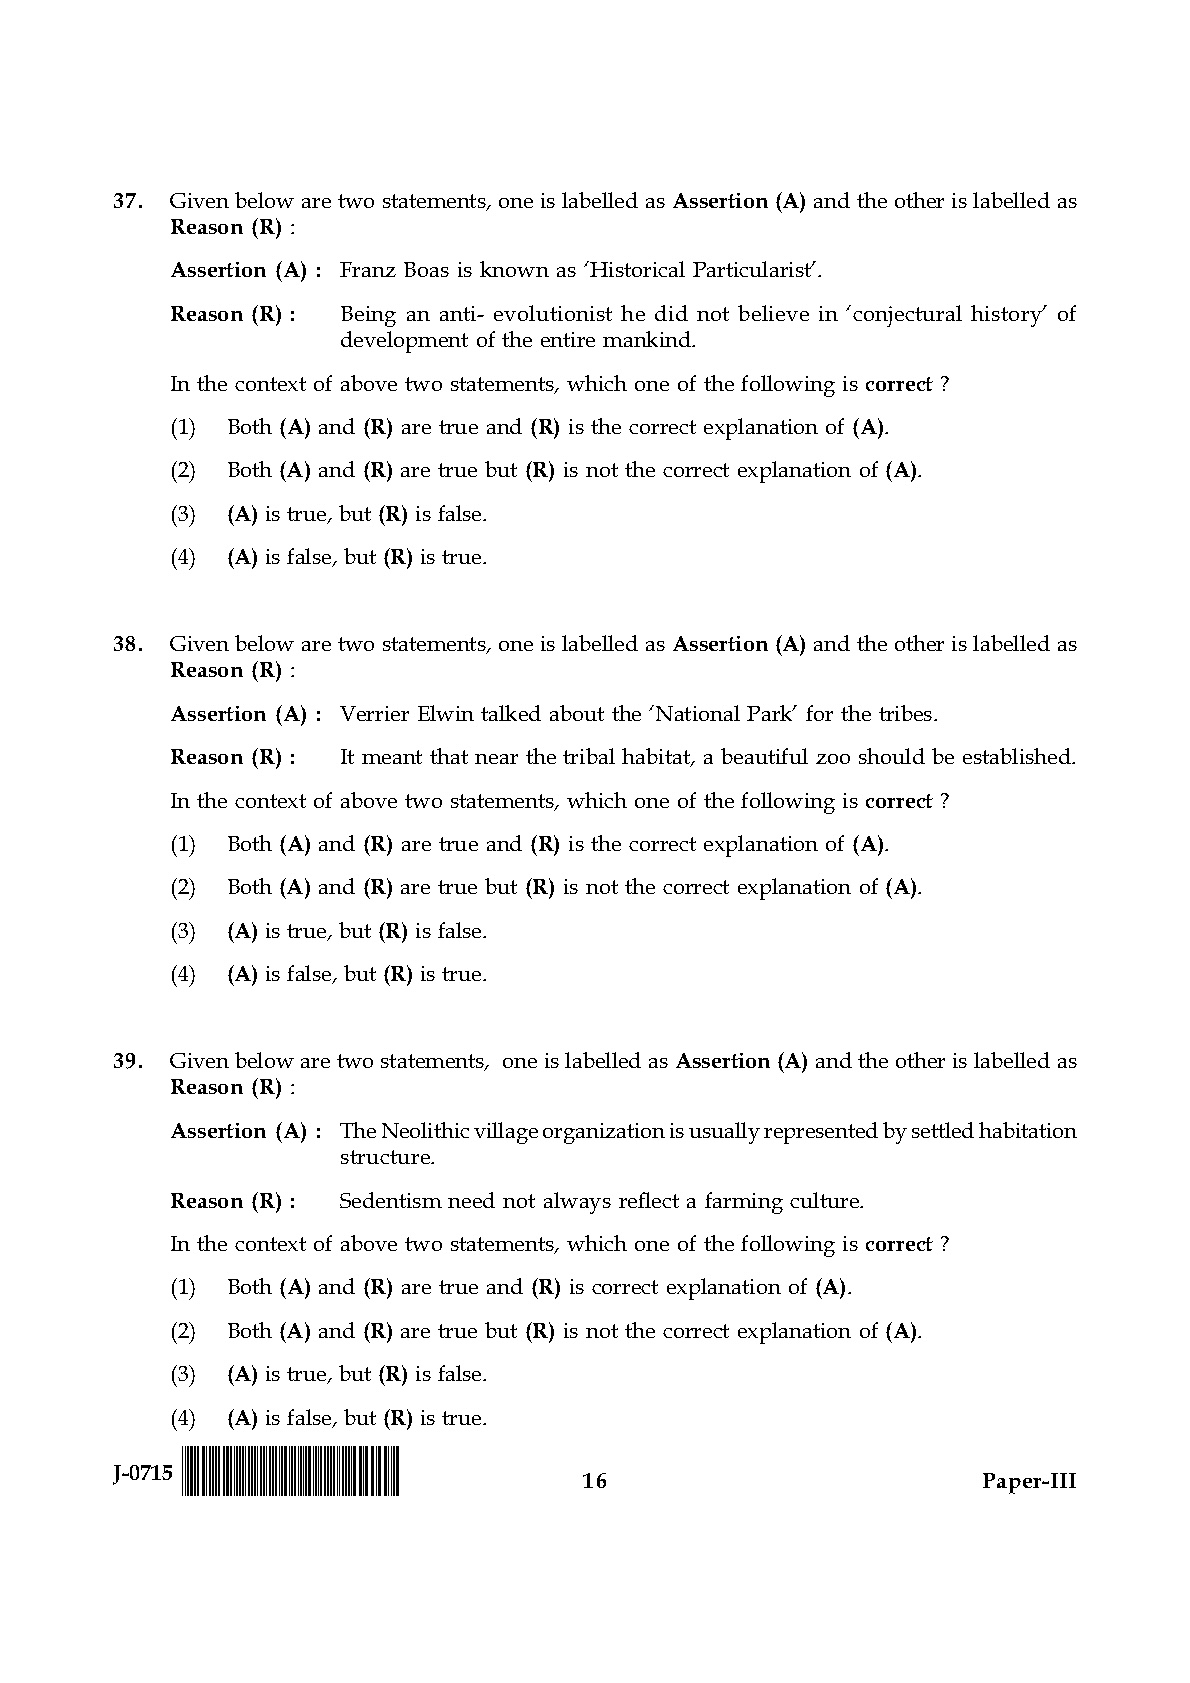 UGC NET Anthropology Question Paper III June 2015 16